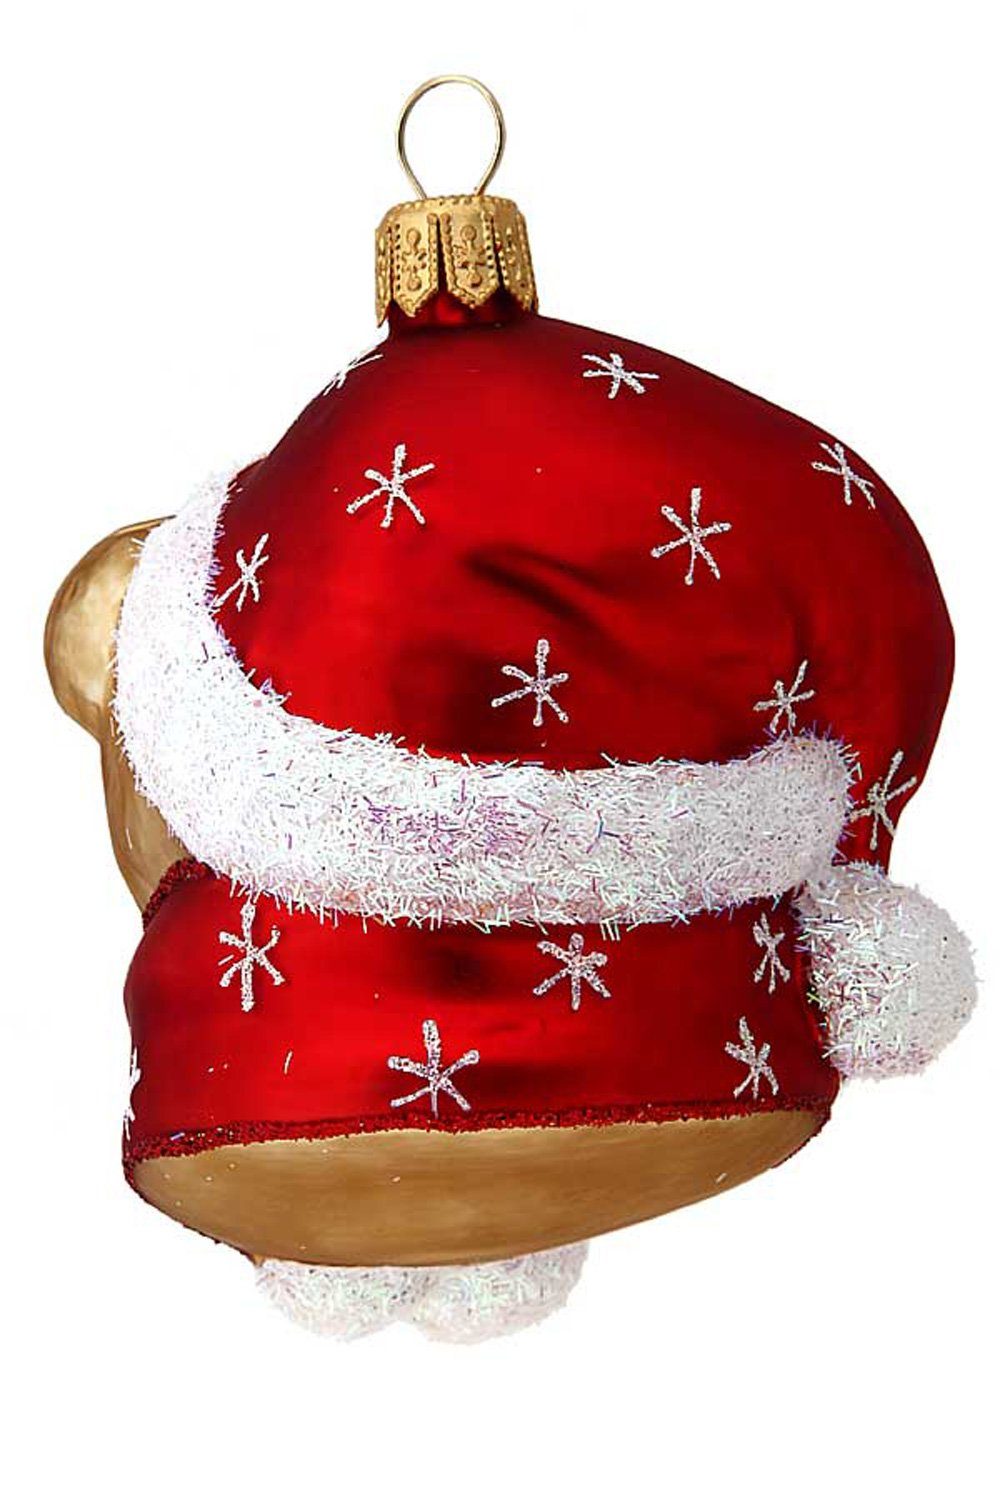 Hamburger Weihnachtskontor Christbaumschmuck Teddykopf, - Dekohänger - handdekoriert mundgeblasen